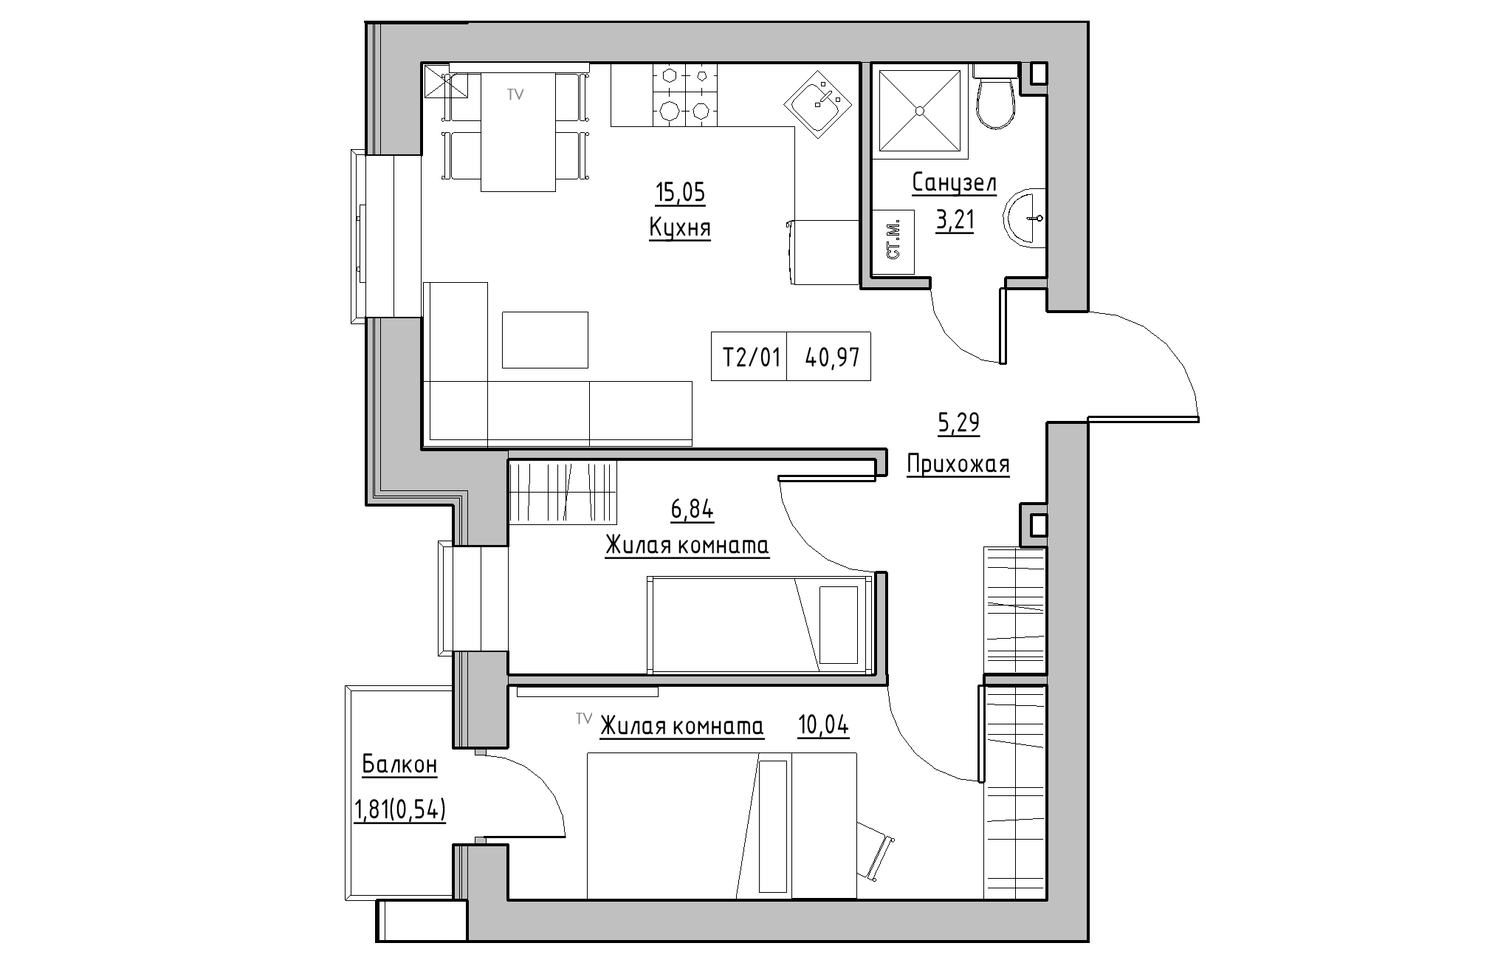 Планування 2-к квартира площею 40.97м2, KS-013-04/0004.